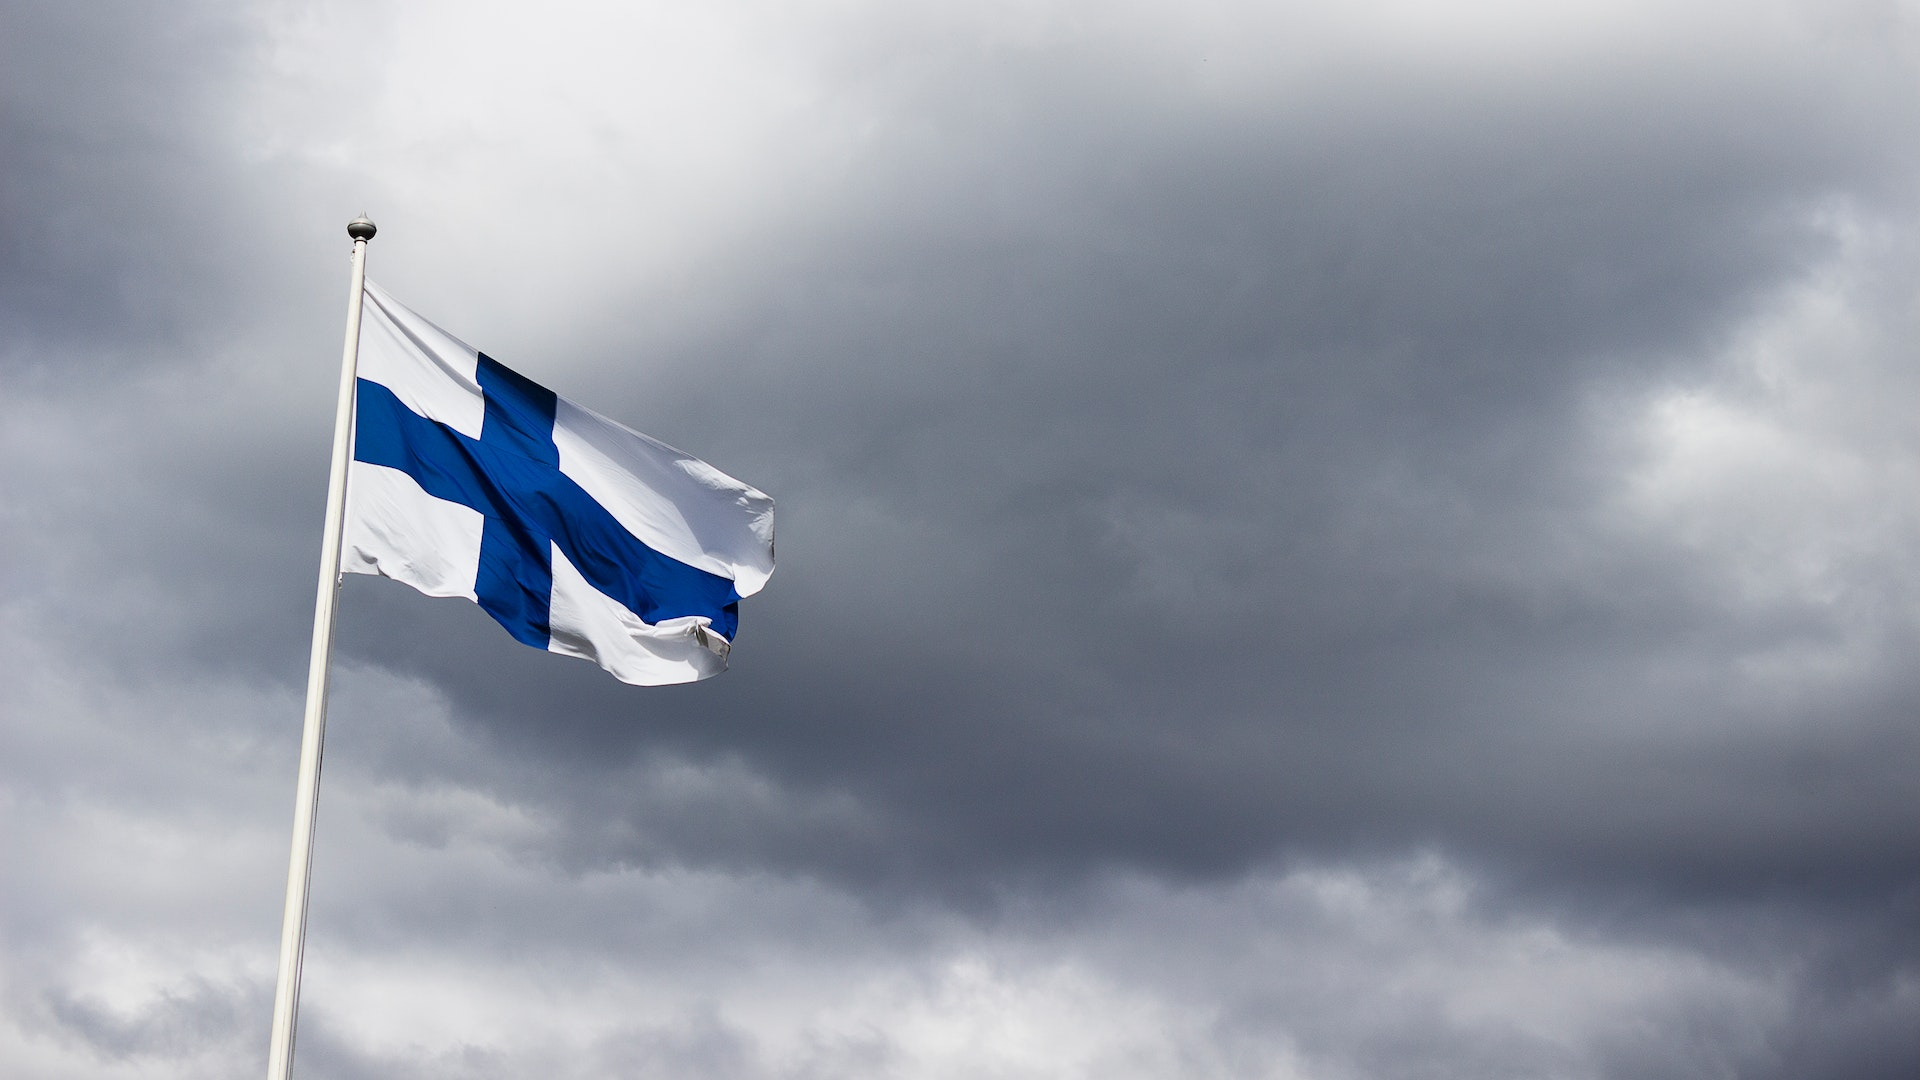 Beskrivning för "Finland är världens bästa land enligt många mätningar. Varför då?"